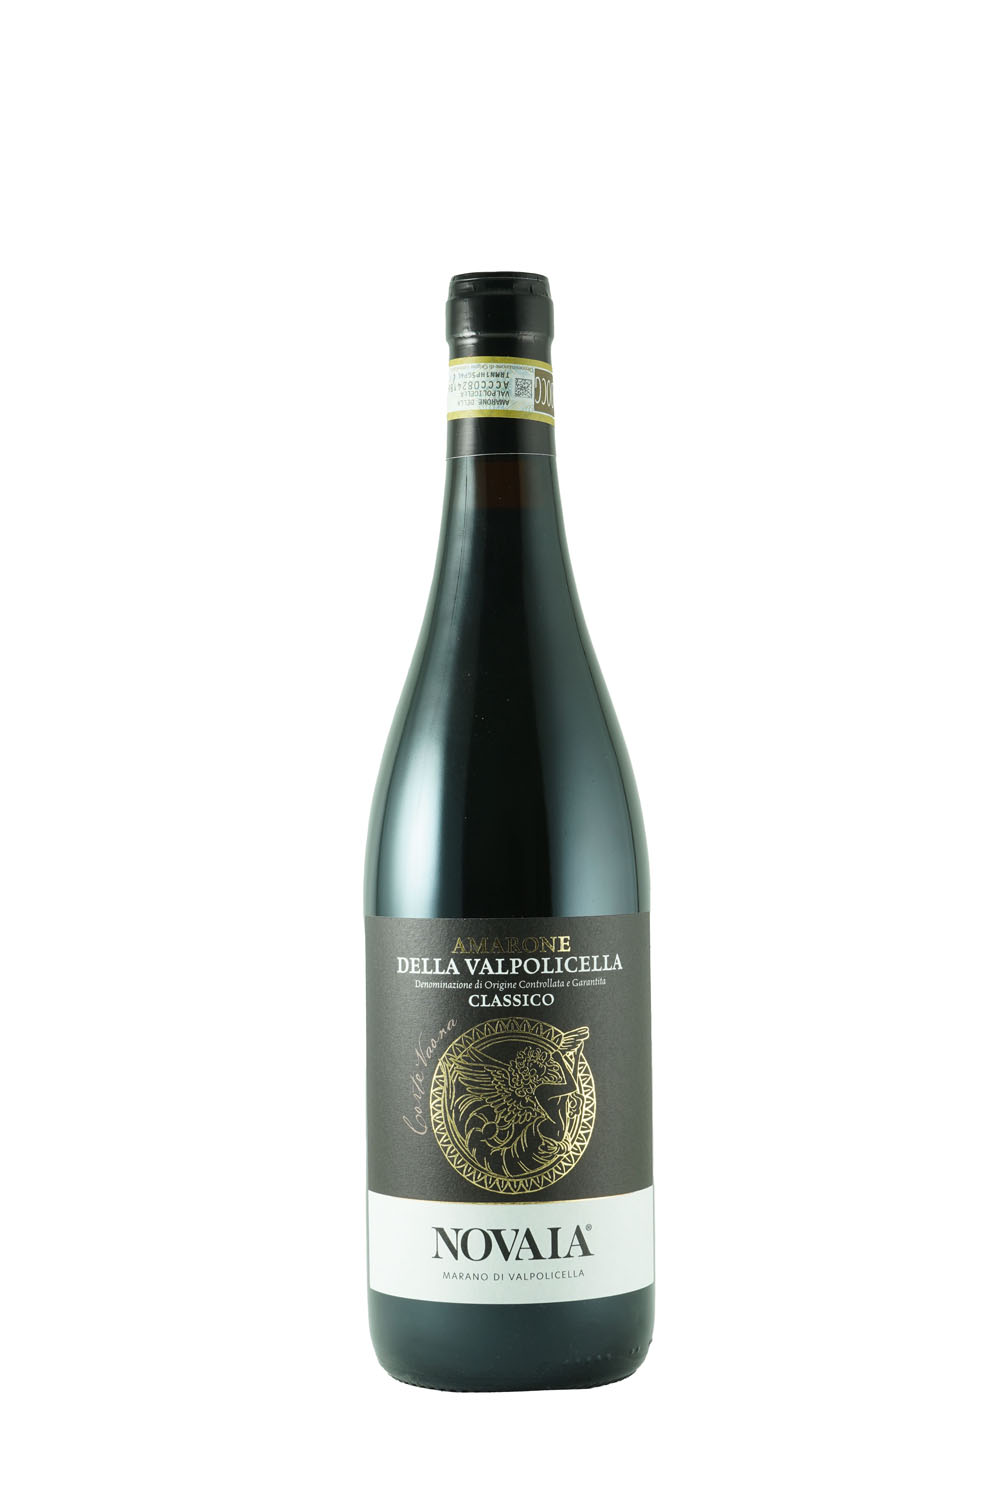 Novaia - Amarone della Valpolicella Classico "Corte Vaona" 2017